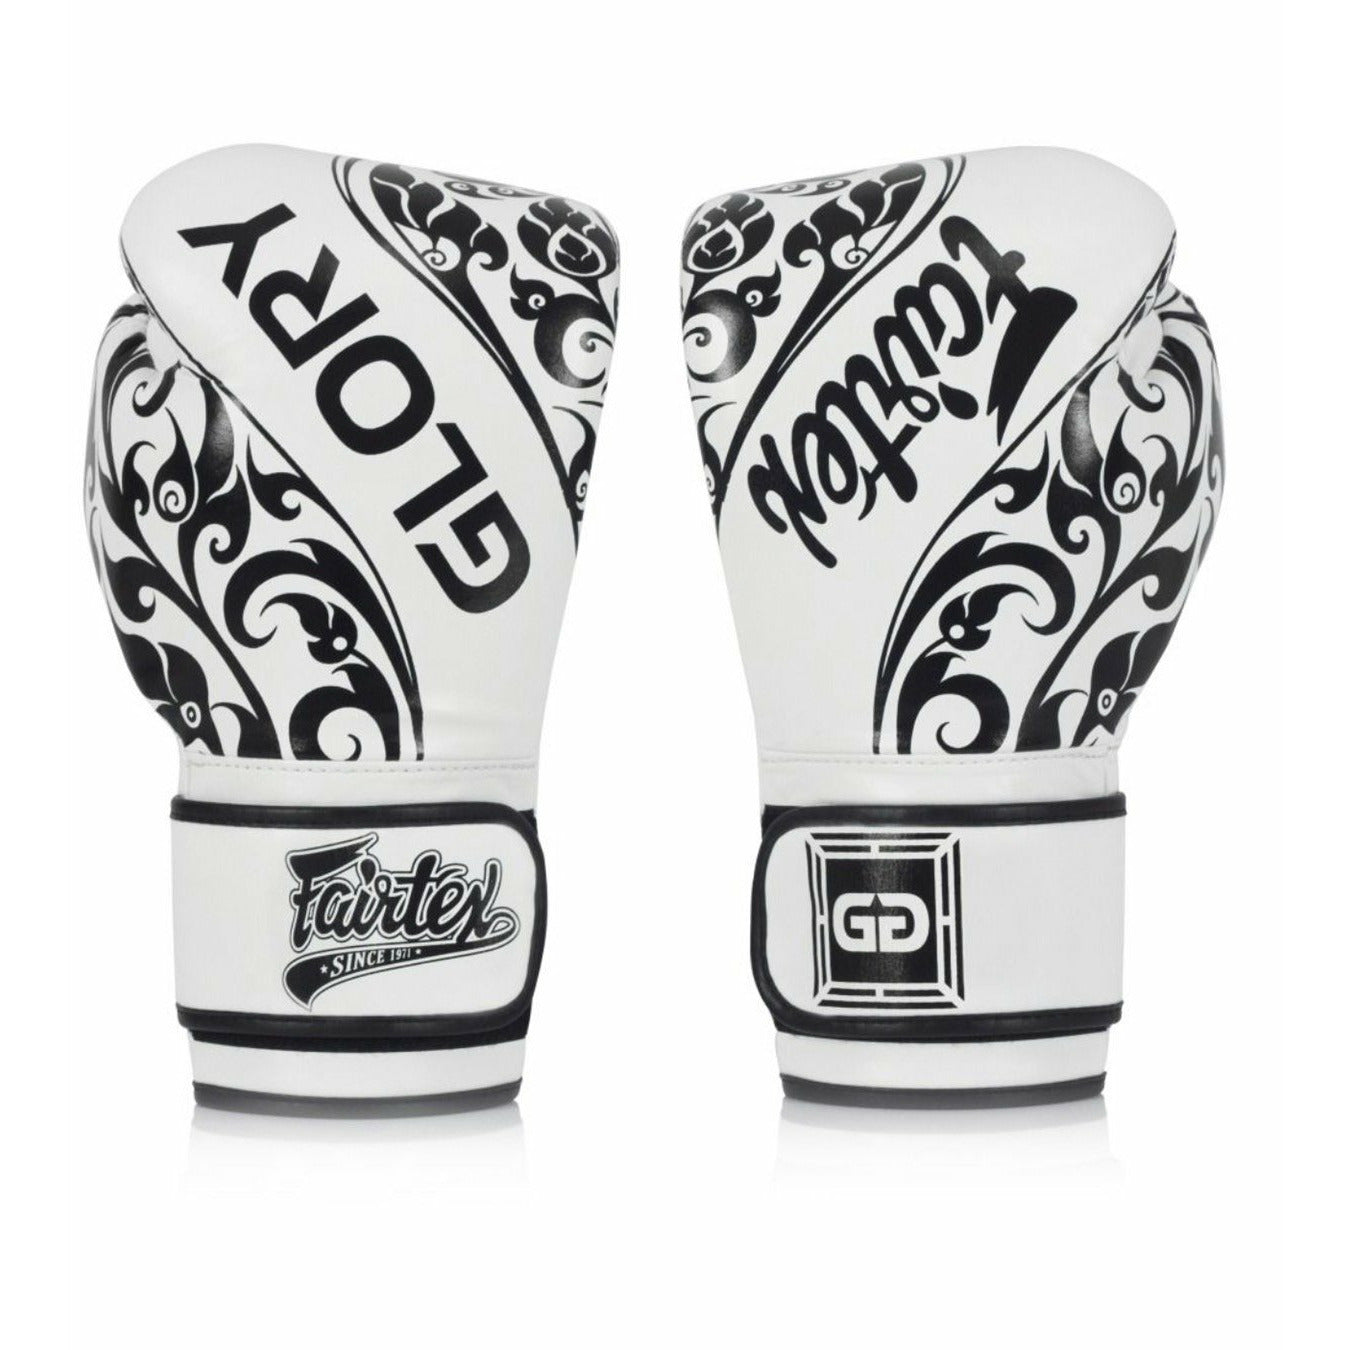 Fairtex Boxing Gloves BGVG2 "Glory" White